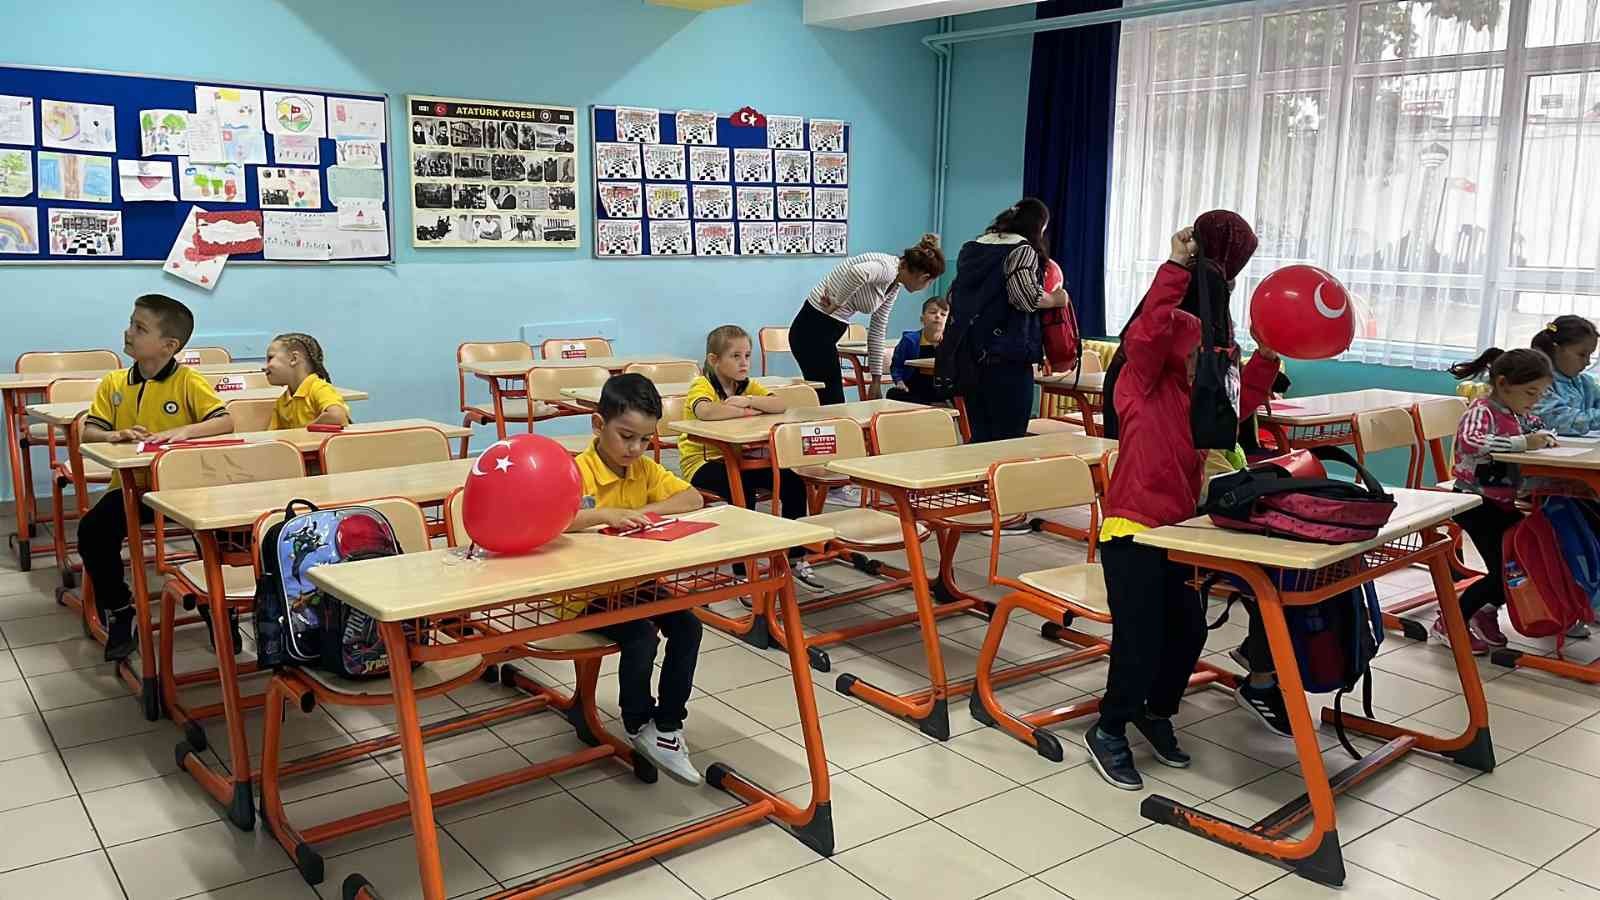 Tekirdağ Ve Edirnede 17 Bin Öğretmen, 259 Bin Öğrenci Ders Başı Yaptı